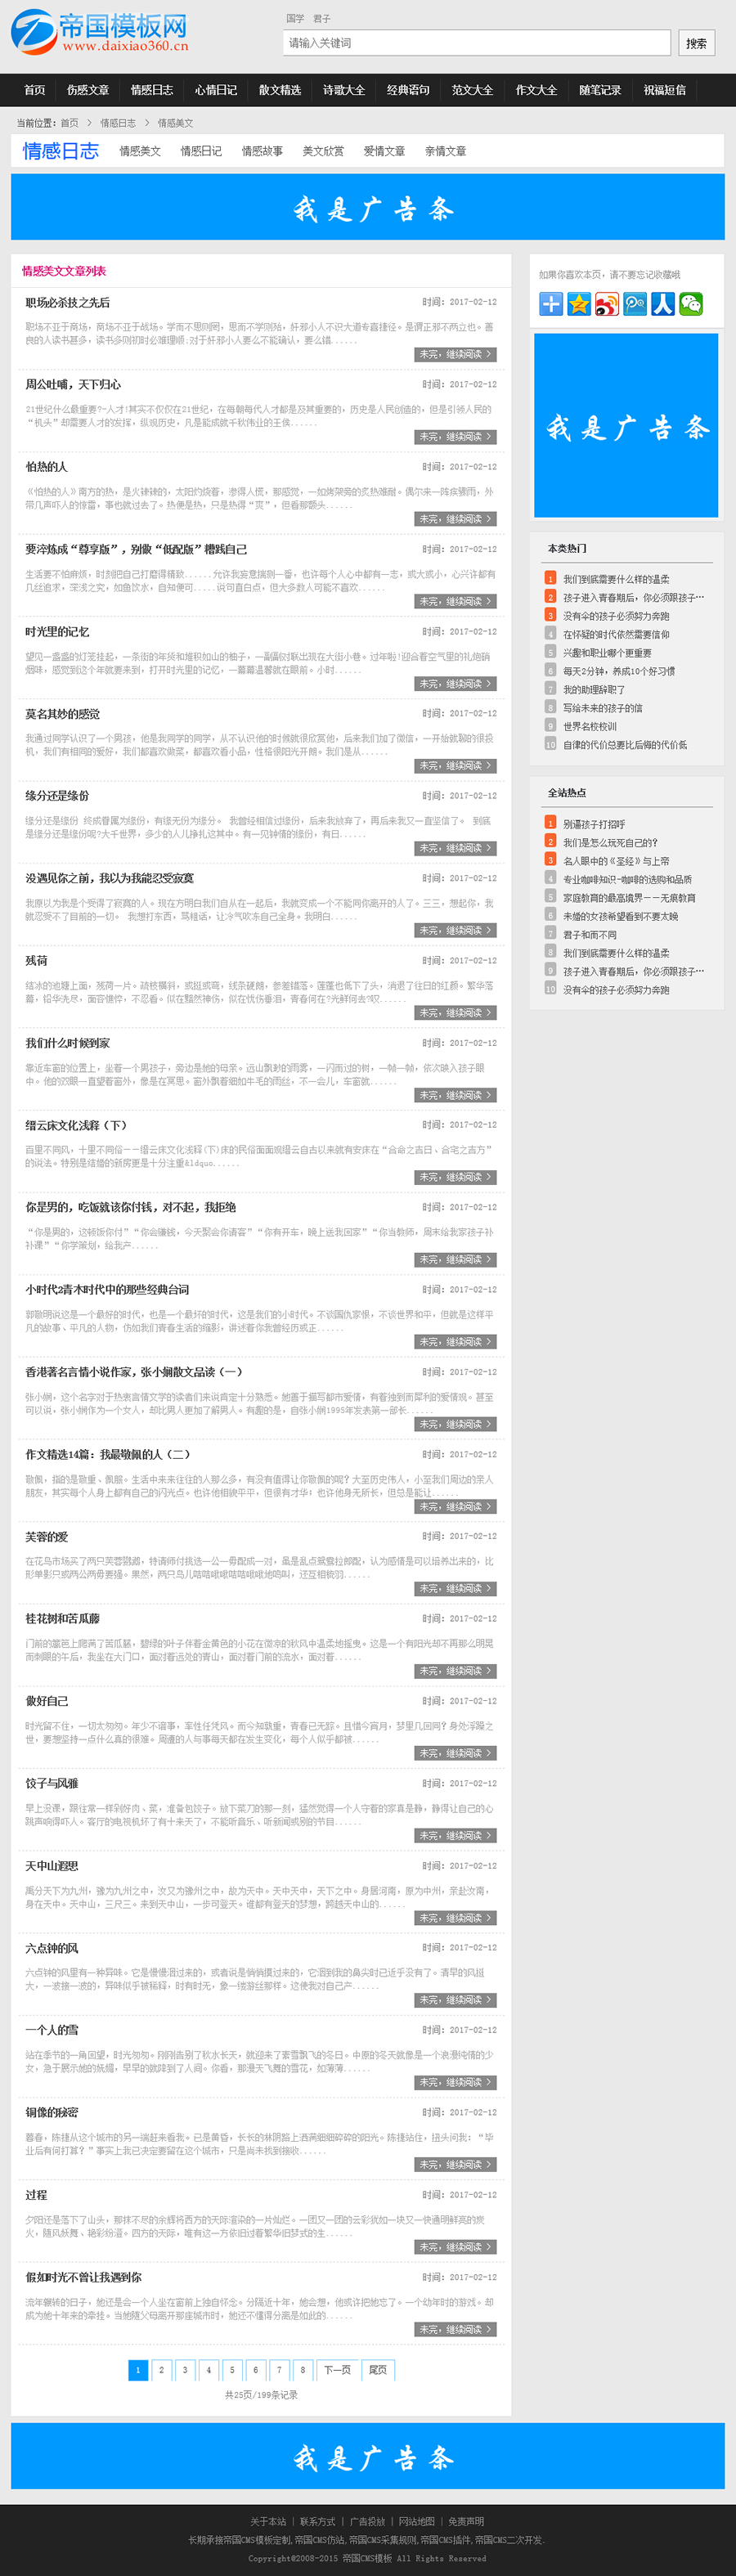 帝国cms蓝色新闻资讯文章模板加手机wap模板_电脑版文章列表模板